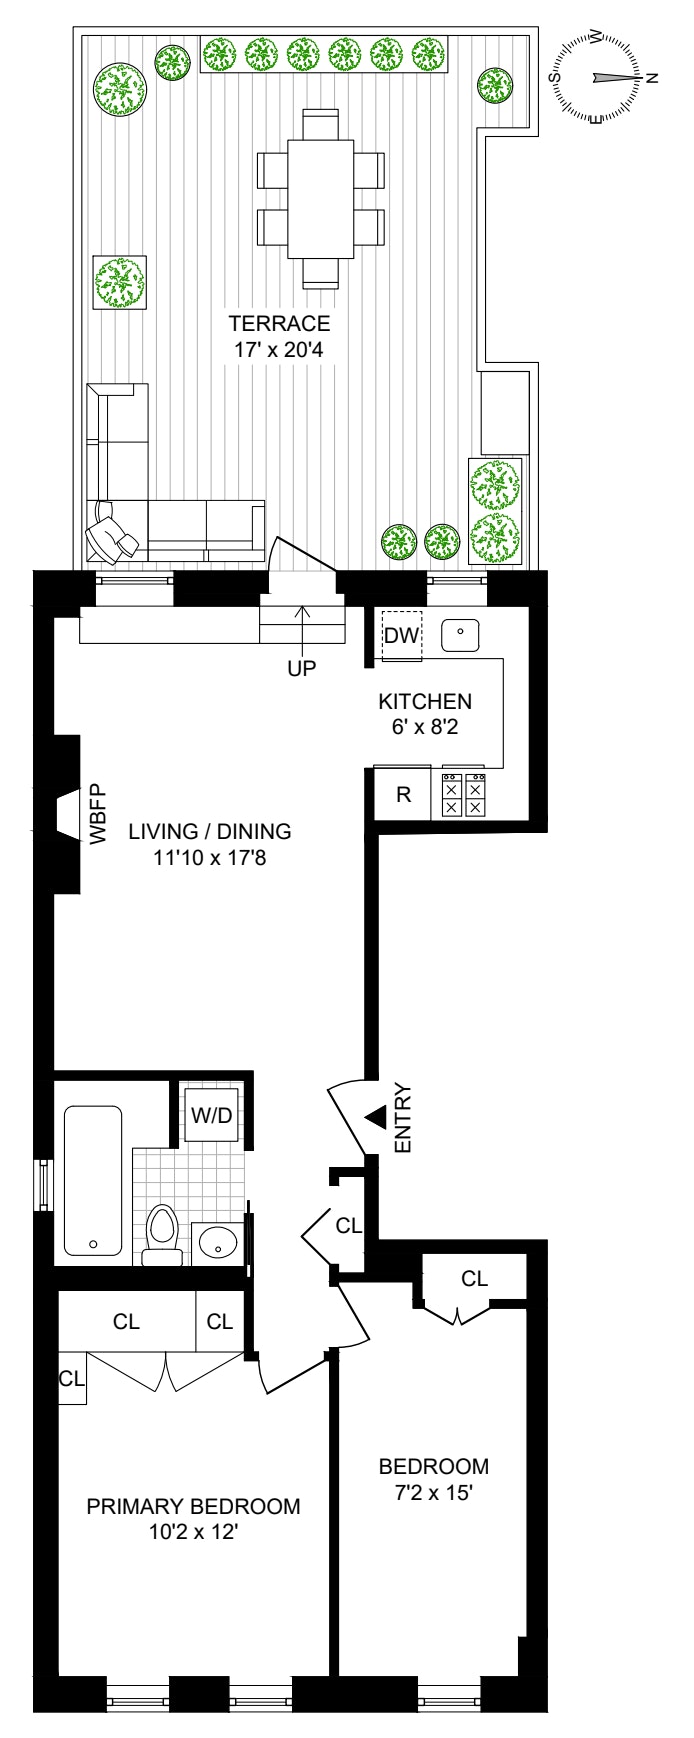 Floorplan for 56 Garden Place